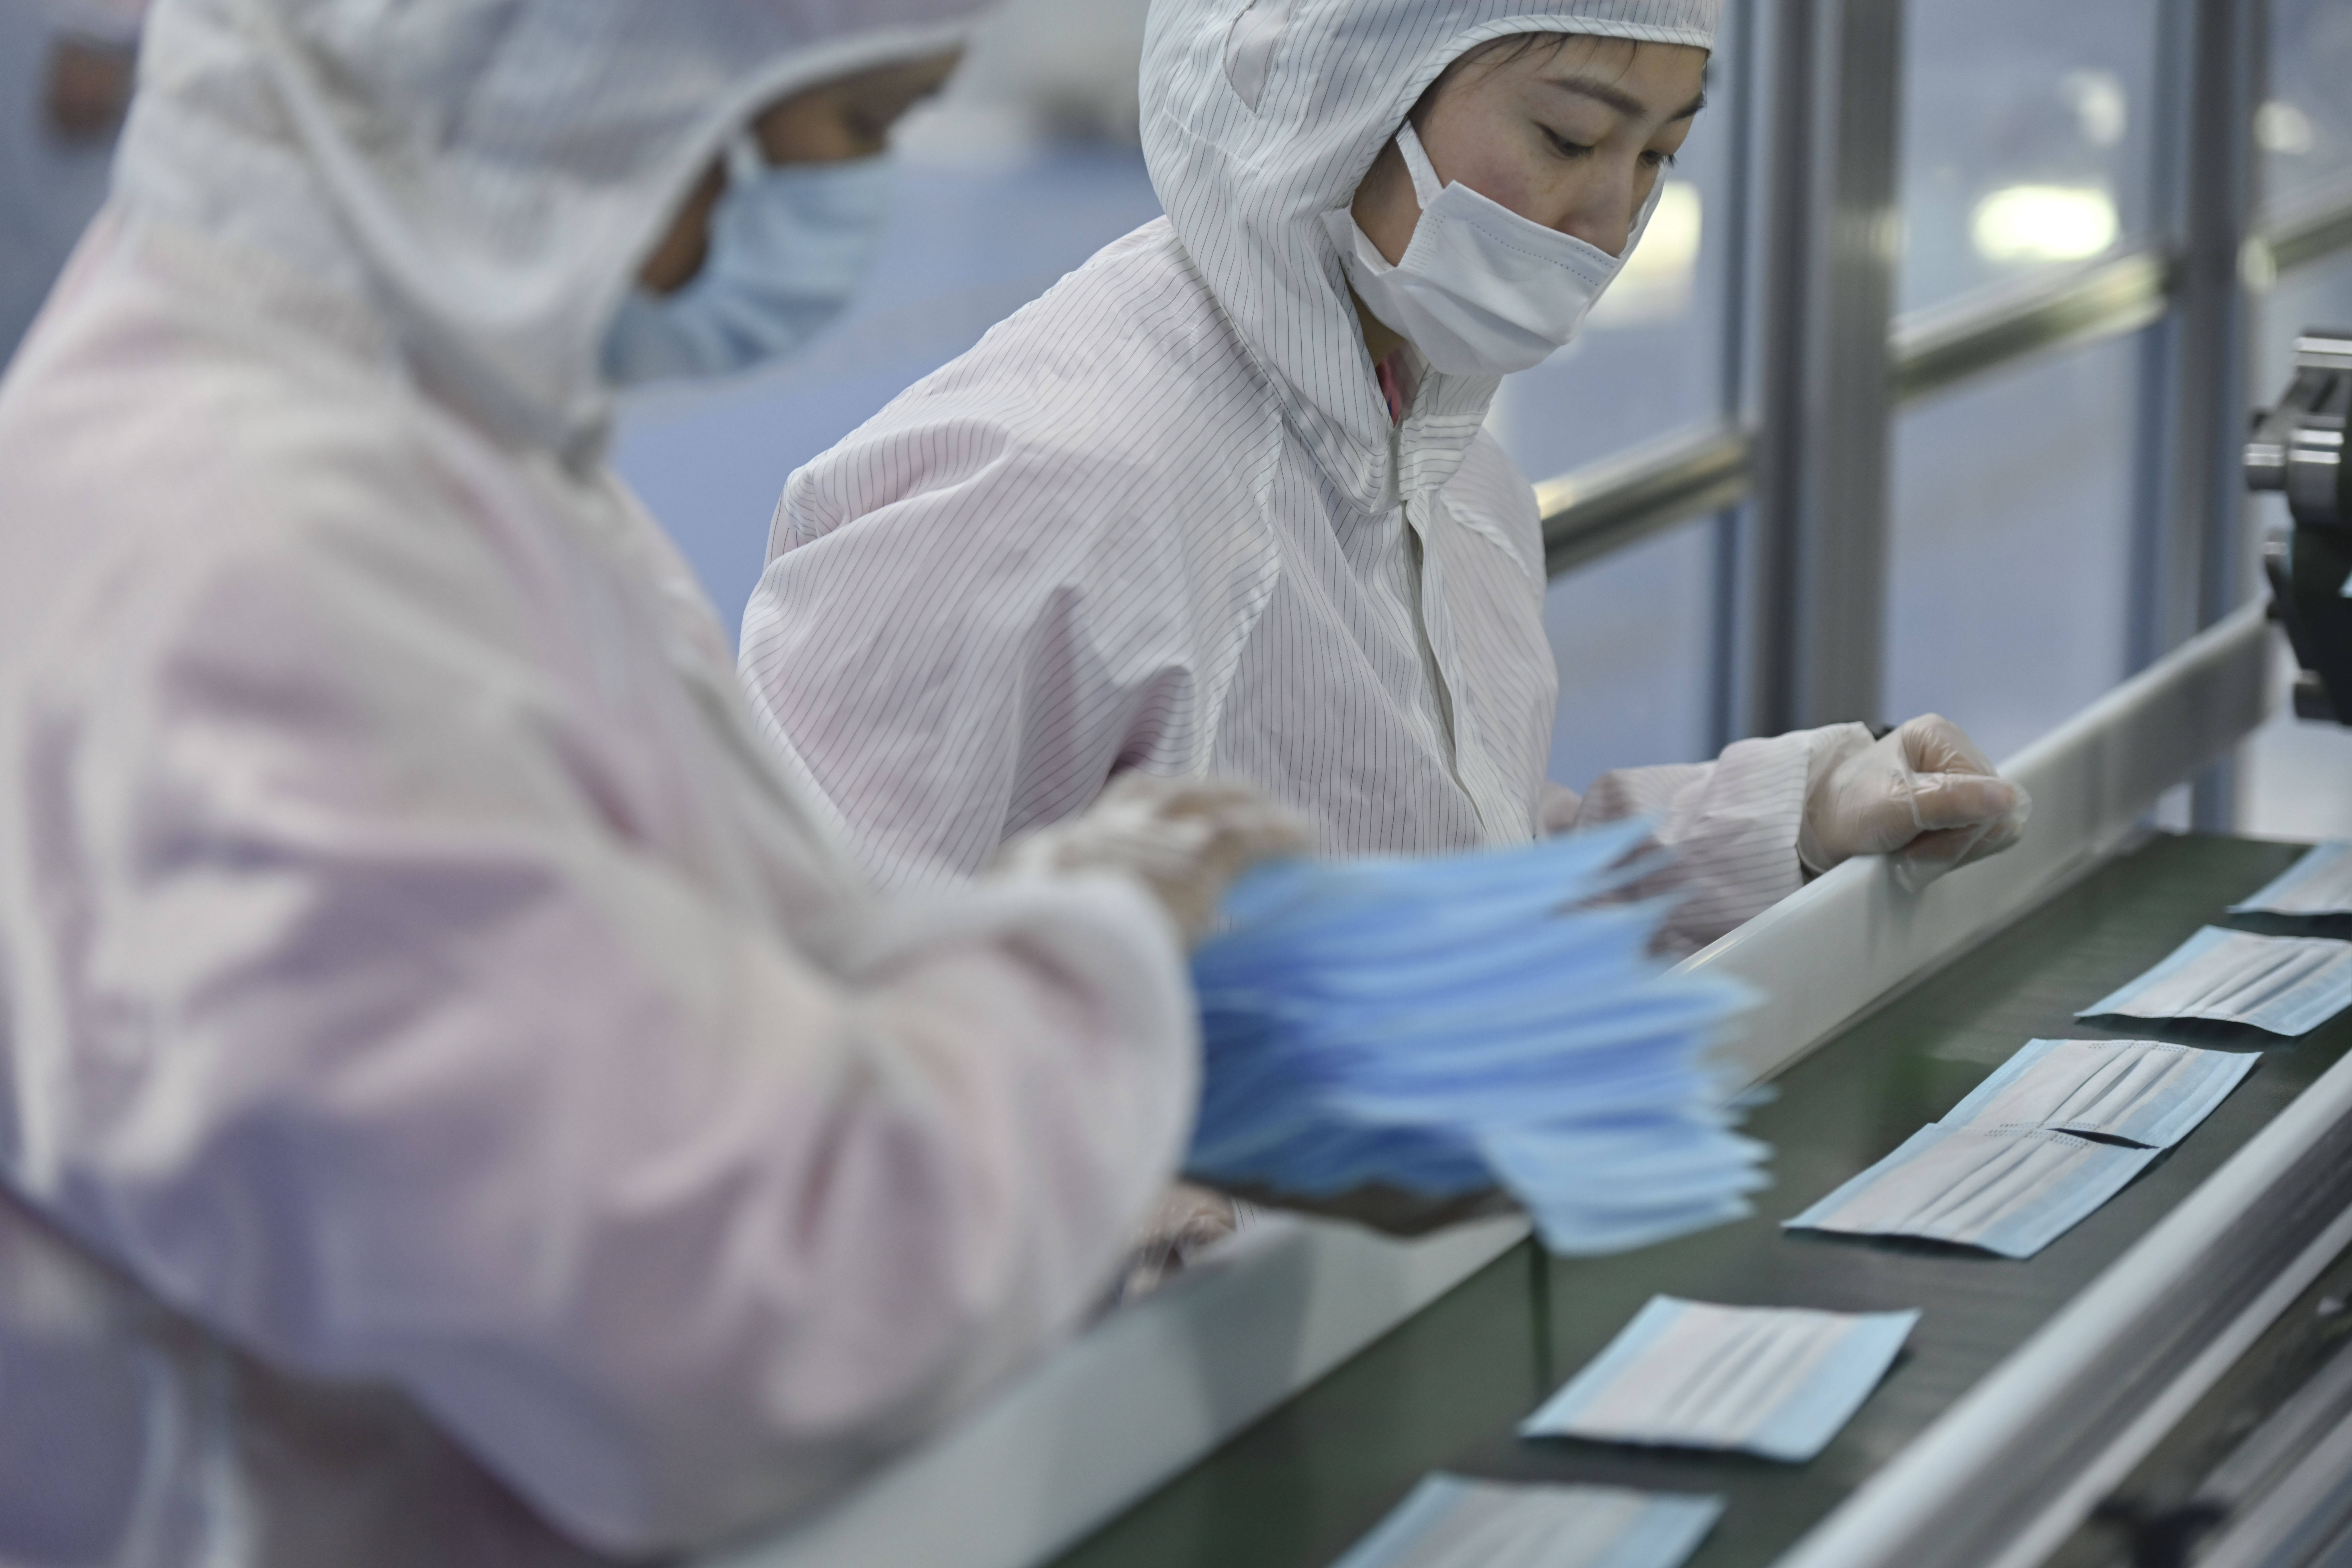 福建泉州石狮一家口罩生产企业的十万级无尘车间,工人在生产医用口罩